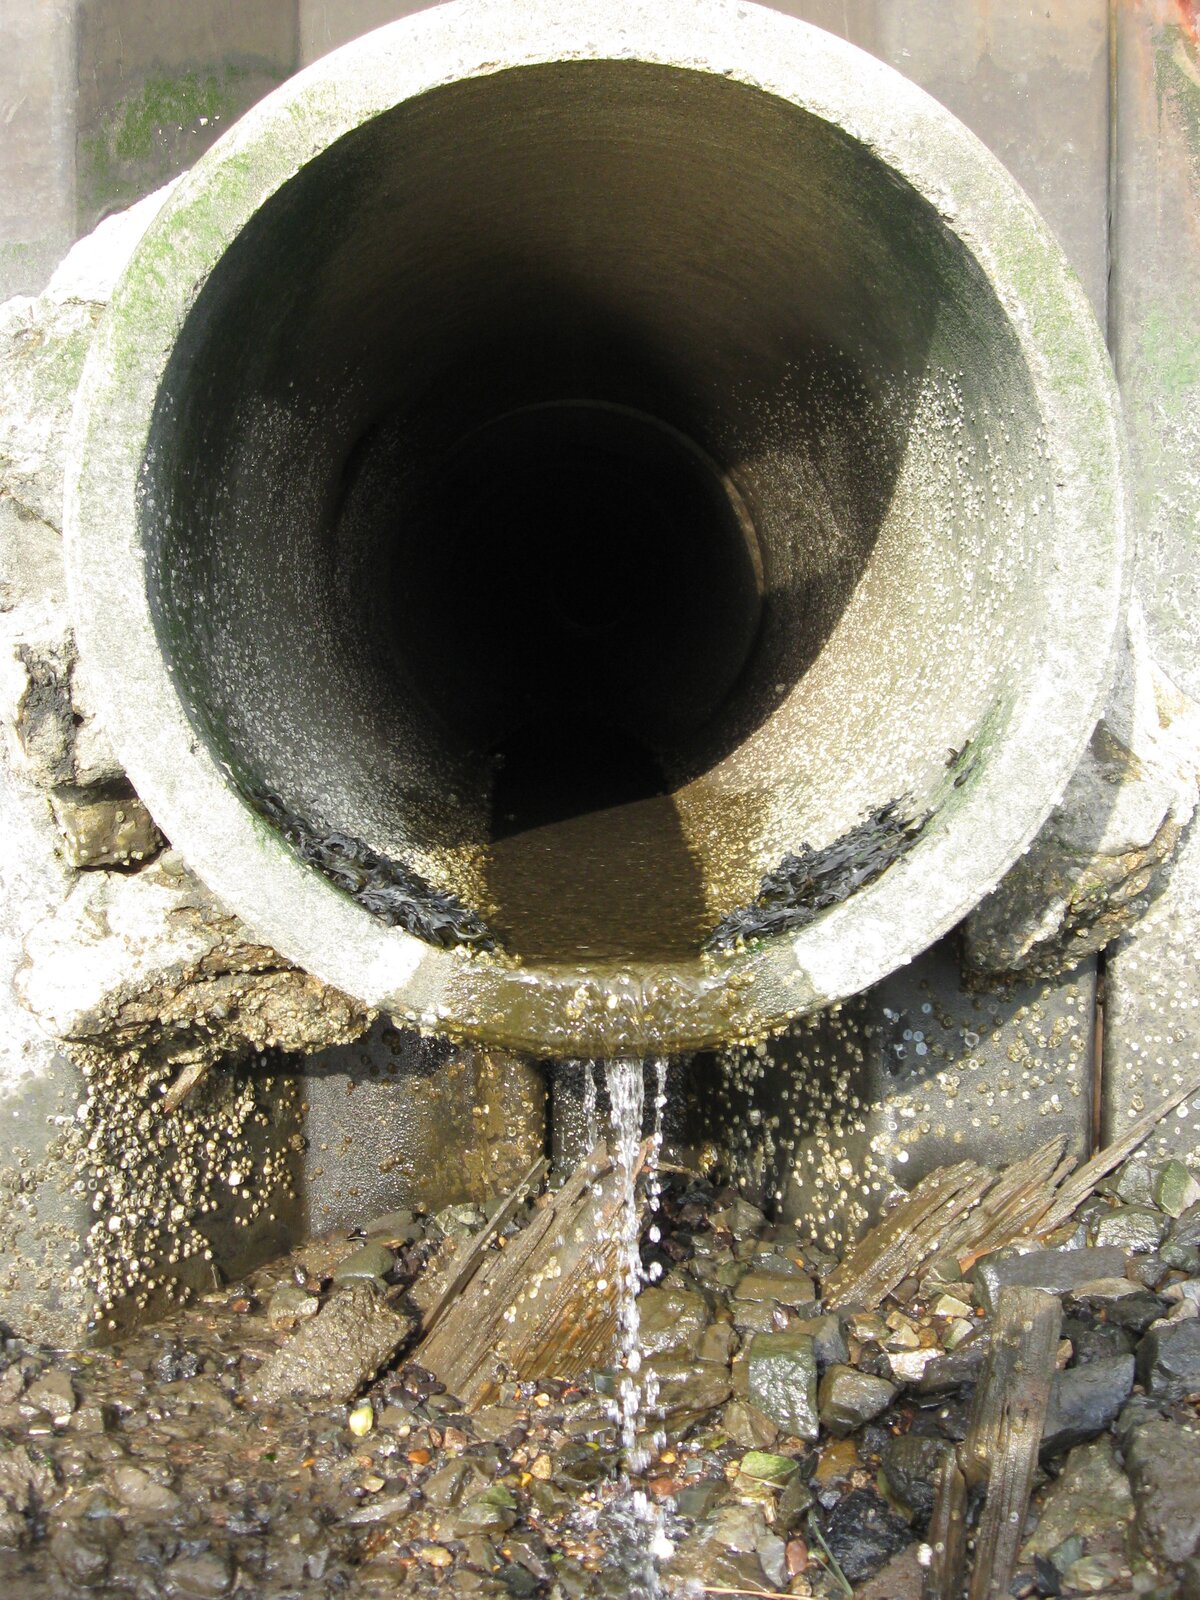 Zdjęcie przedstawia rurę wylotową kanalizacji. Z rury wypływa niewielki strumień wody. Dolna część rury wyraźnie obrośnięta glonami.